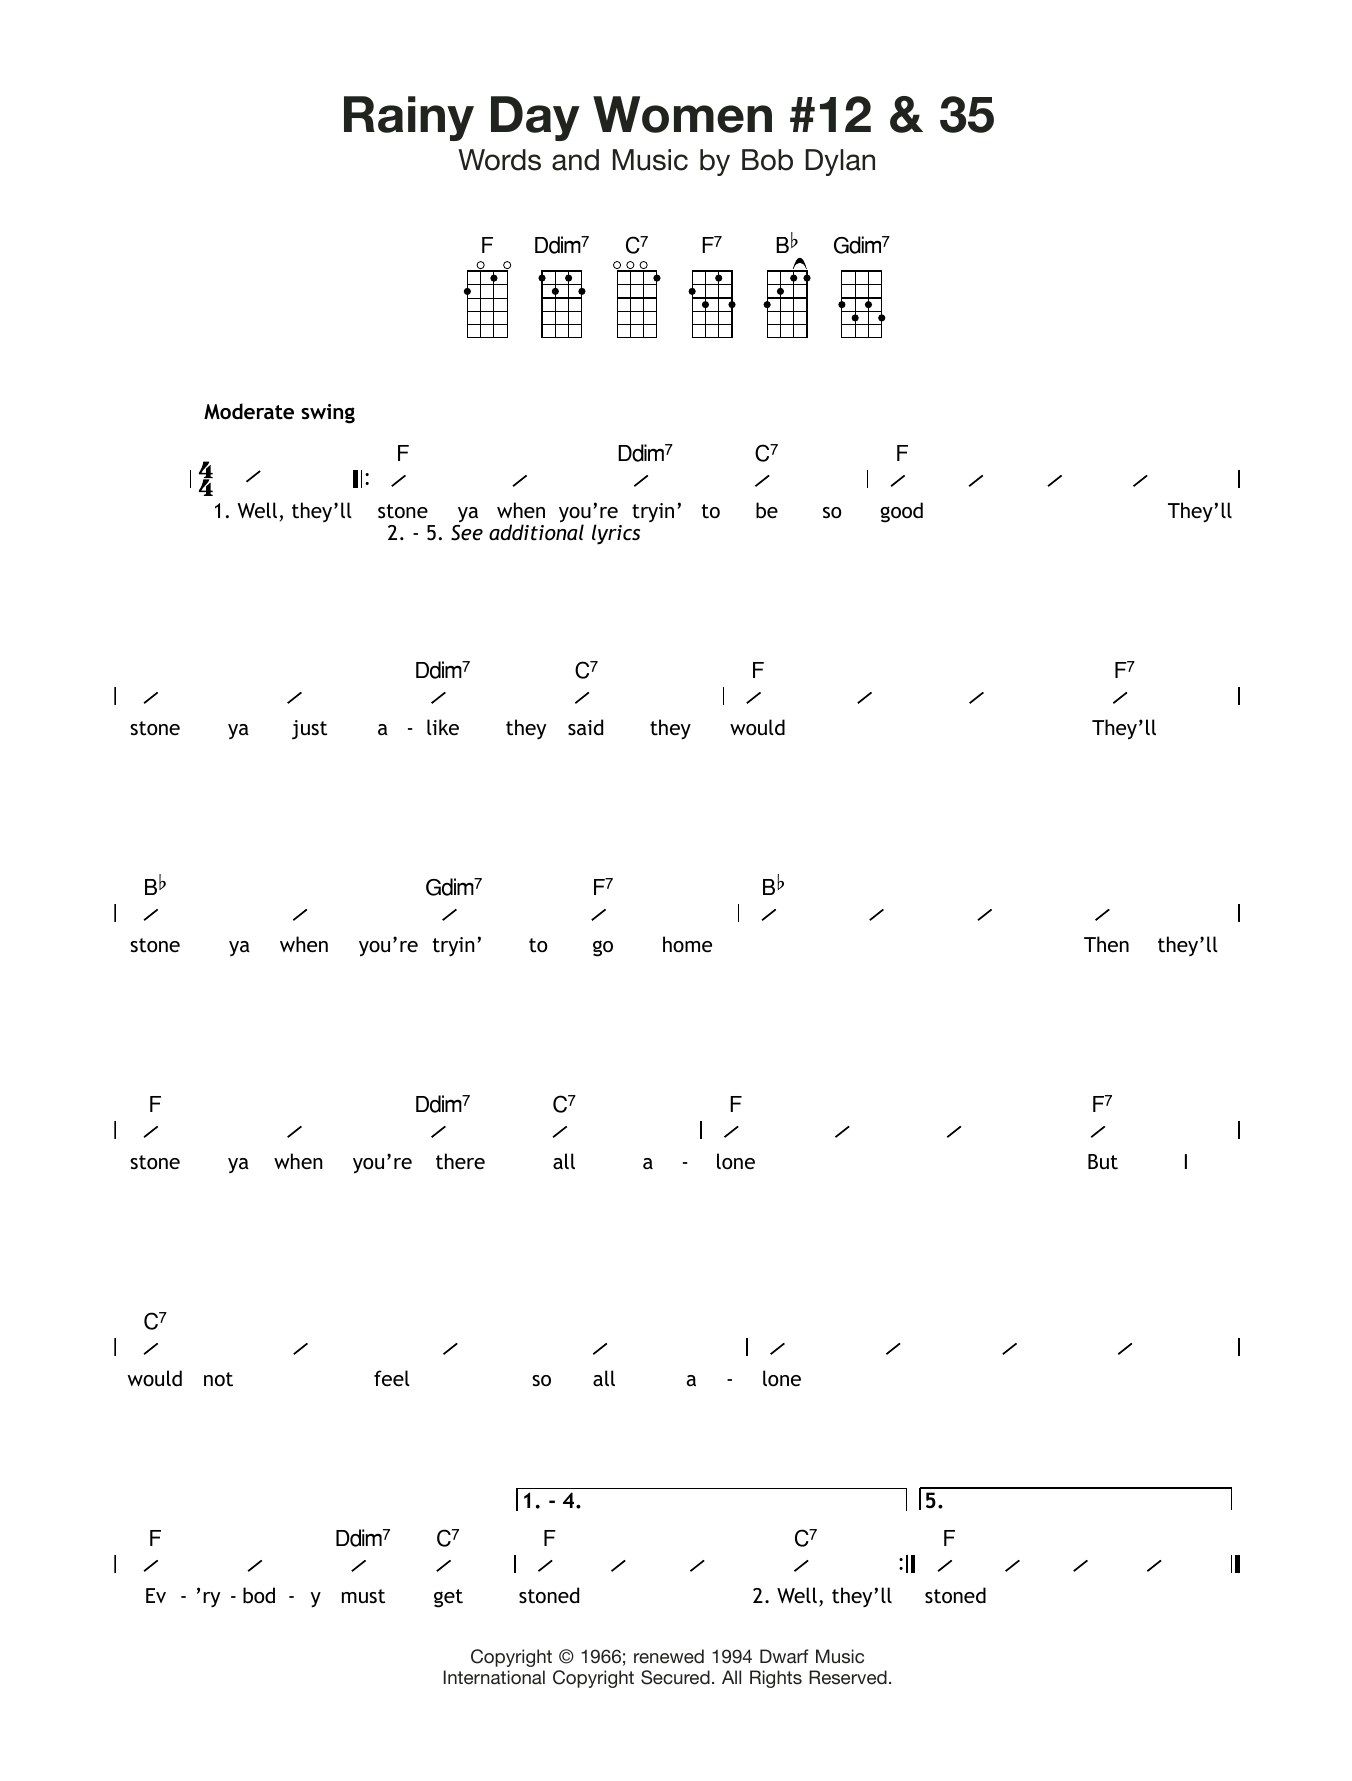 Bob Dylan Rainy Day Women #12 and 35 sheet music notes and chords arranged for Ukulele Chords/Lyrics